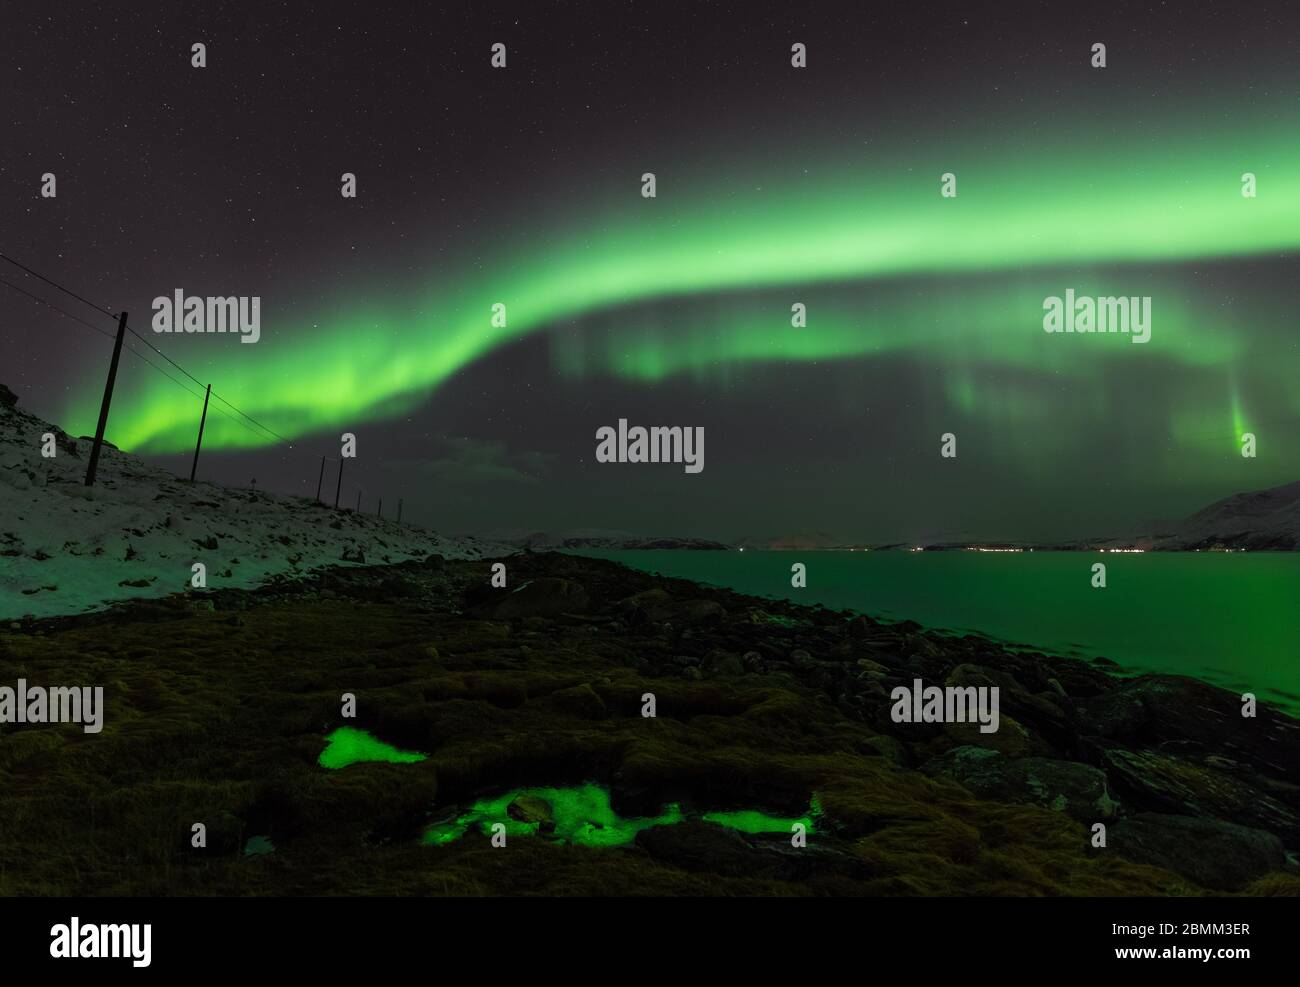 Luci verdi che illuminano la terra e il cielo Foto Stock